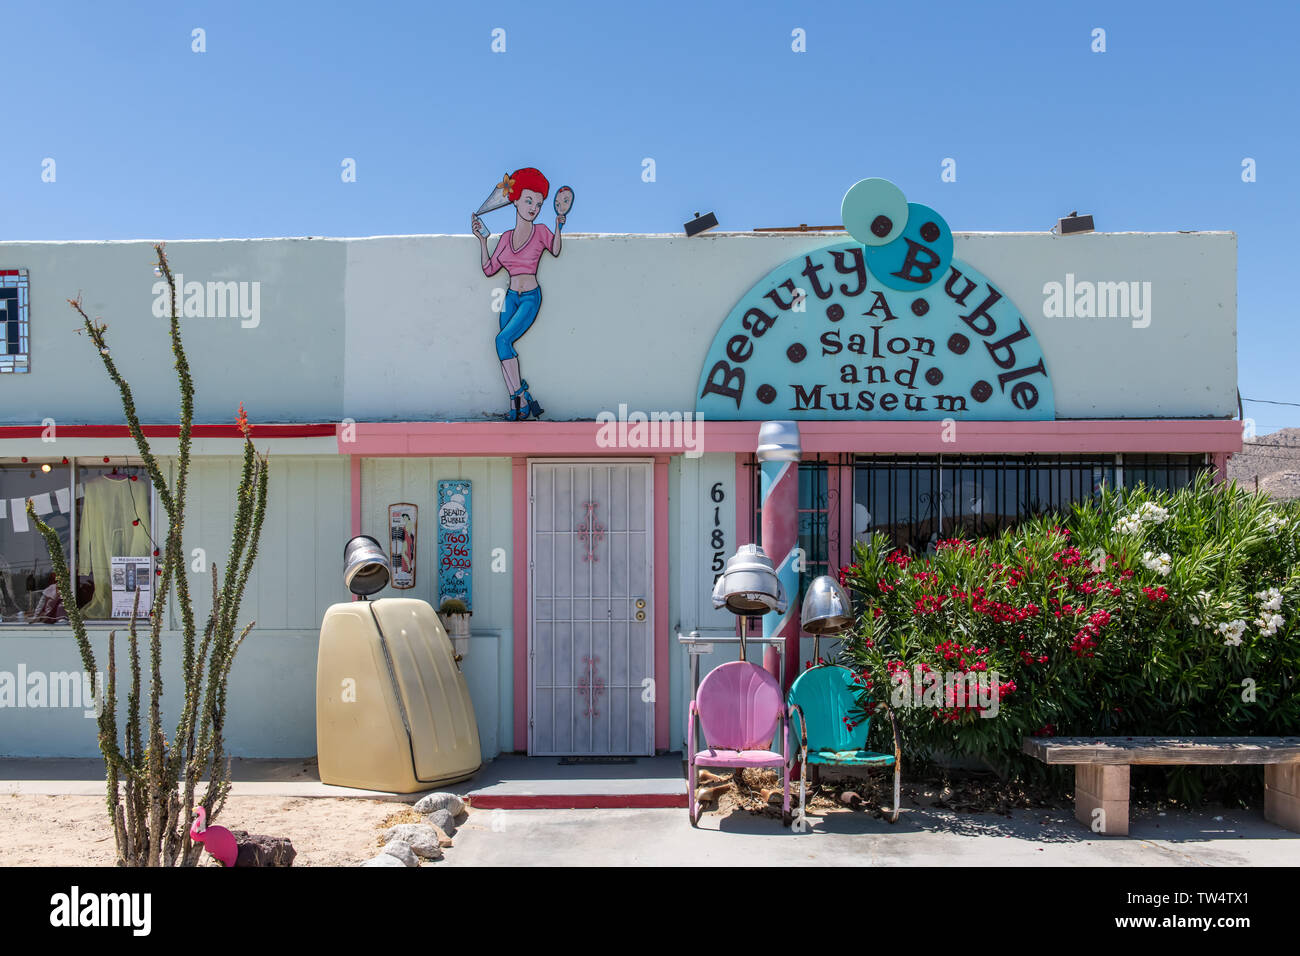 Bulle - un salon de beauté et musée en Yucca Valley, Californie Banque D'Images